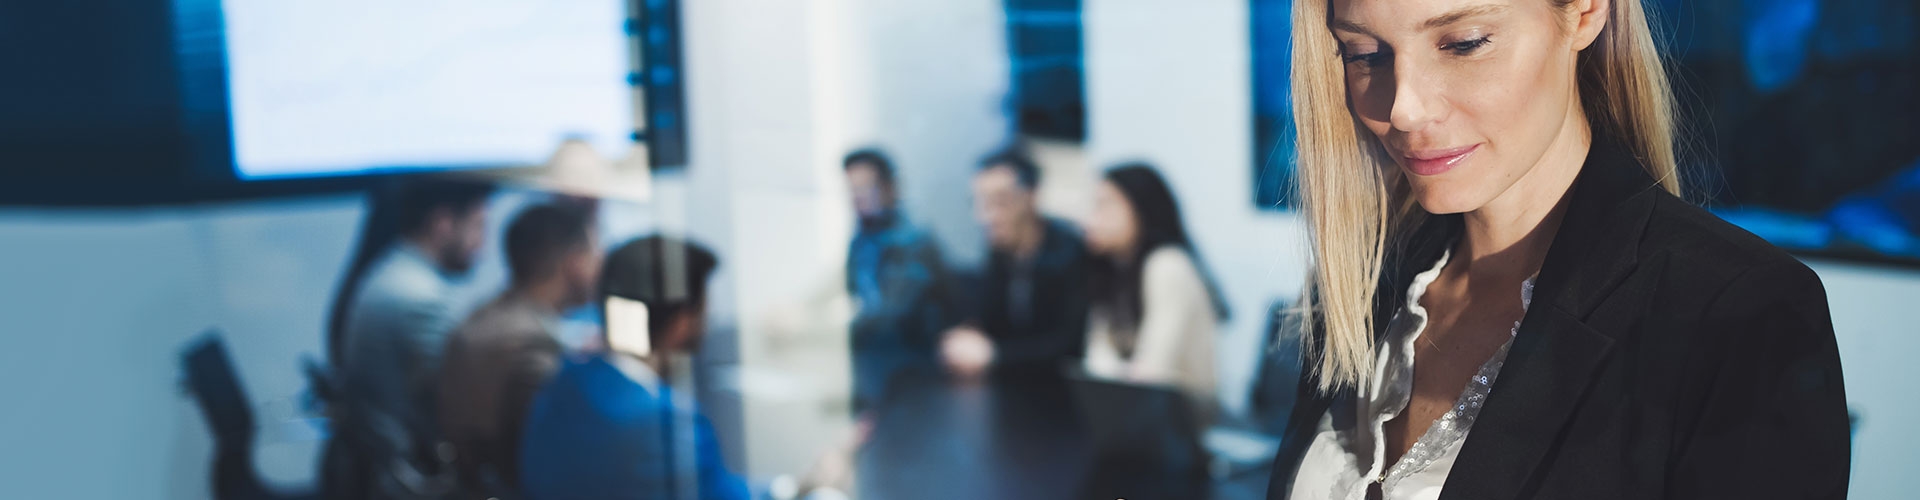 Seguro para empresas Globalcaja - Mujer joven y rubia de negocios con chaqueta de traje negra y camisa blanca utilizando una tablet en una reunión en la oficina